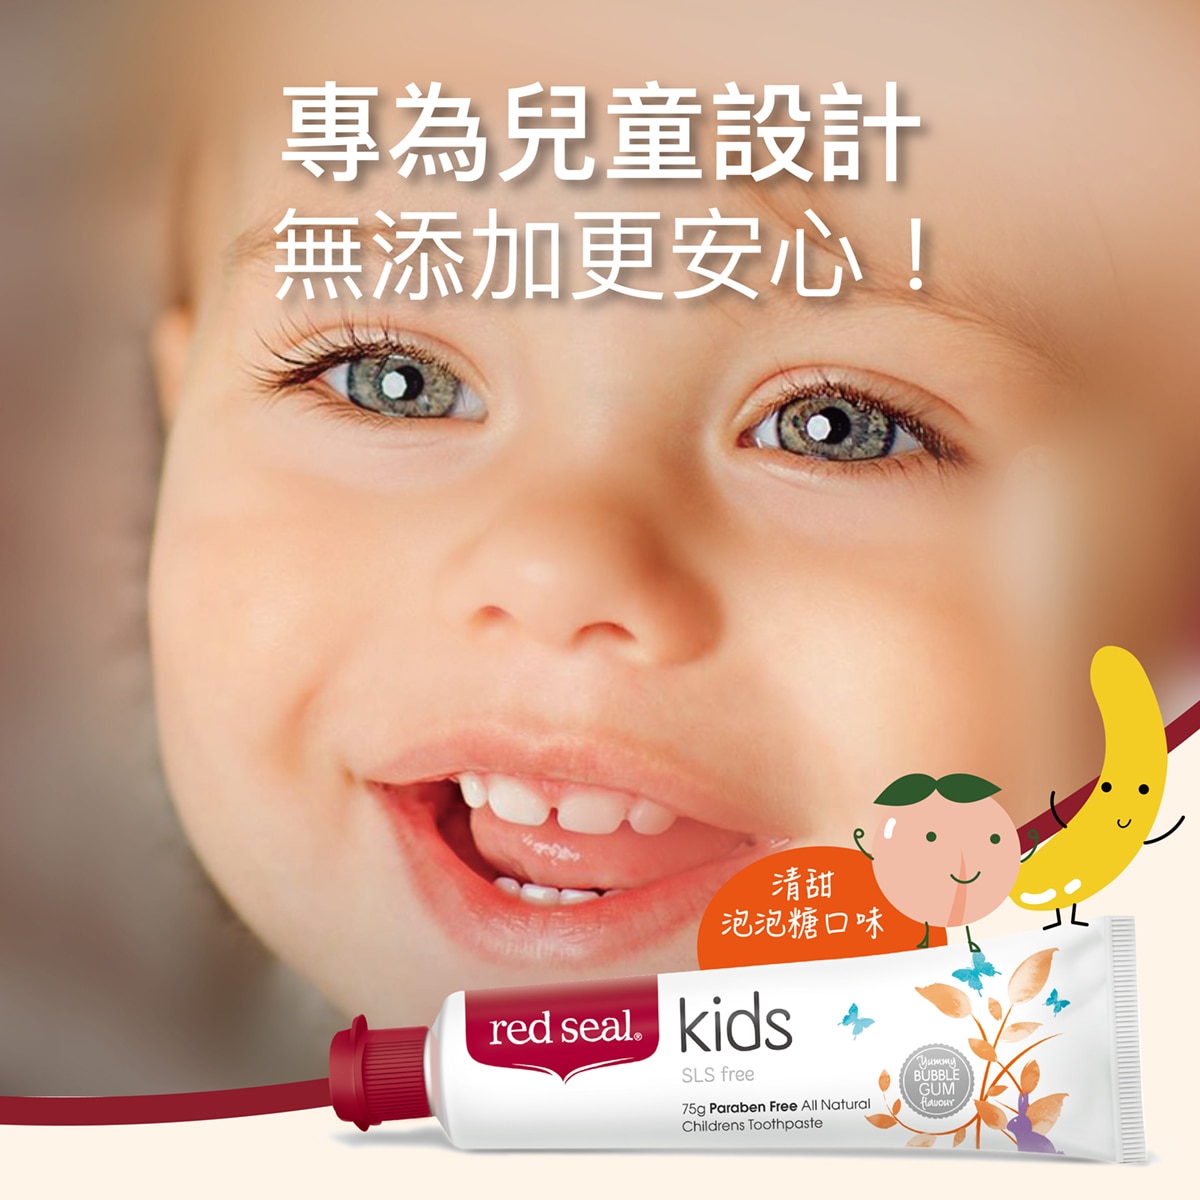 Red Seal 紅印無氟兒童牙膏，專為兒童設計，無添加更安心。